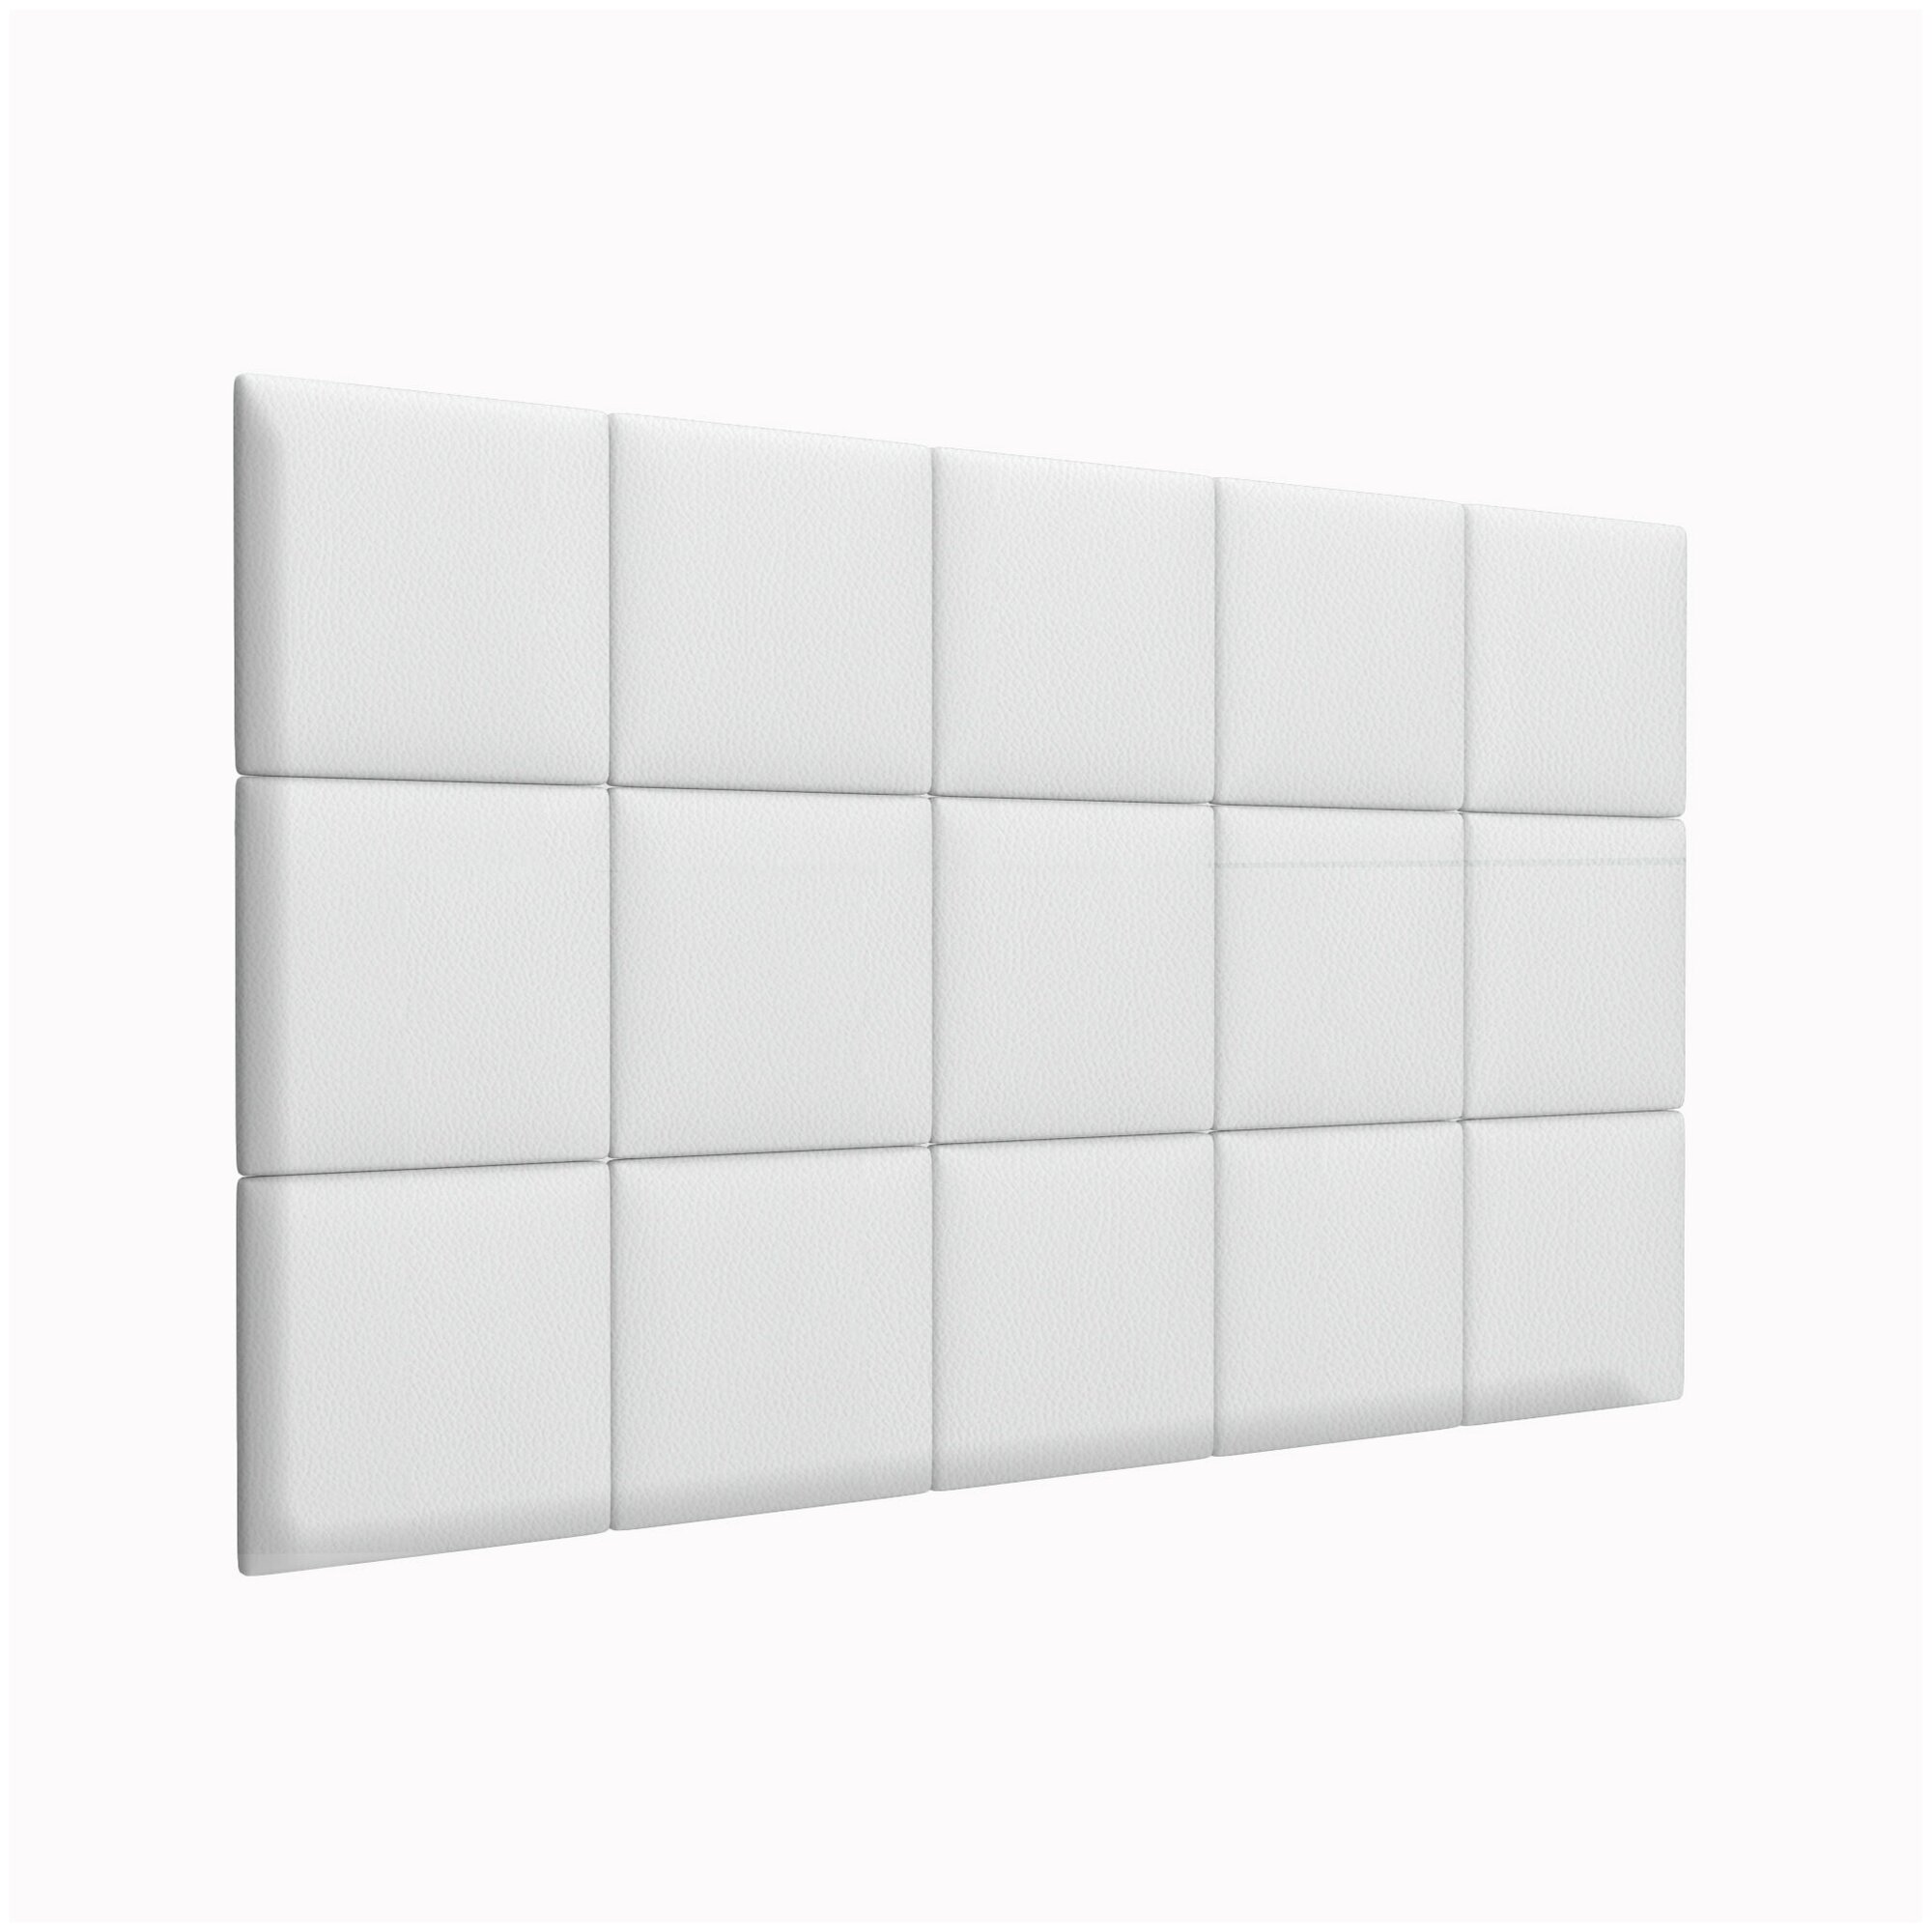 Стеновая панель Eco Leather White 30х30 см 2 шт.